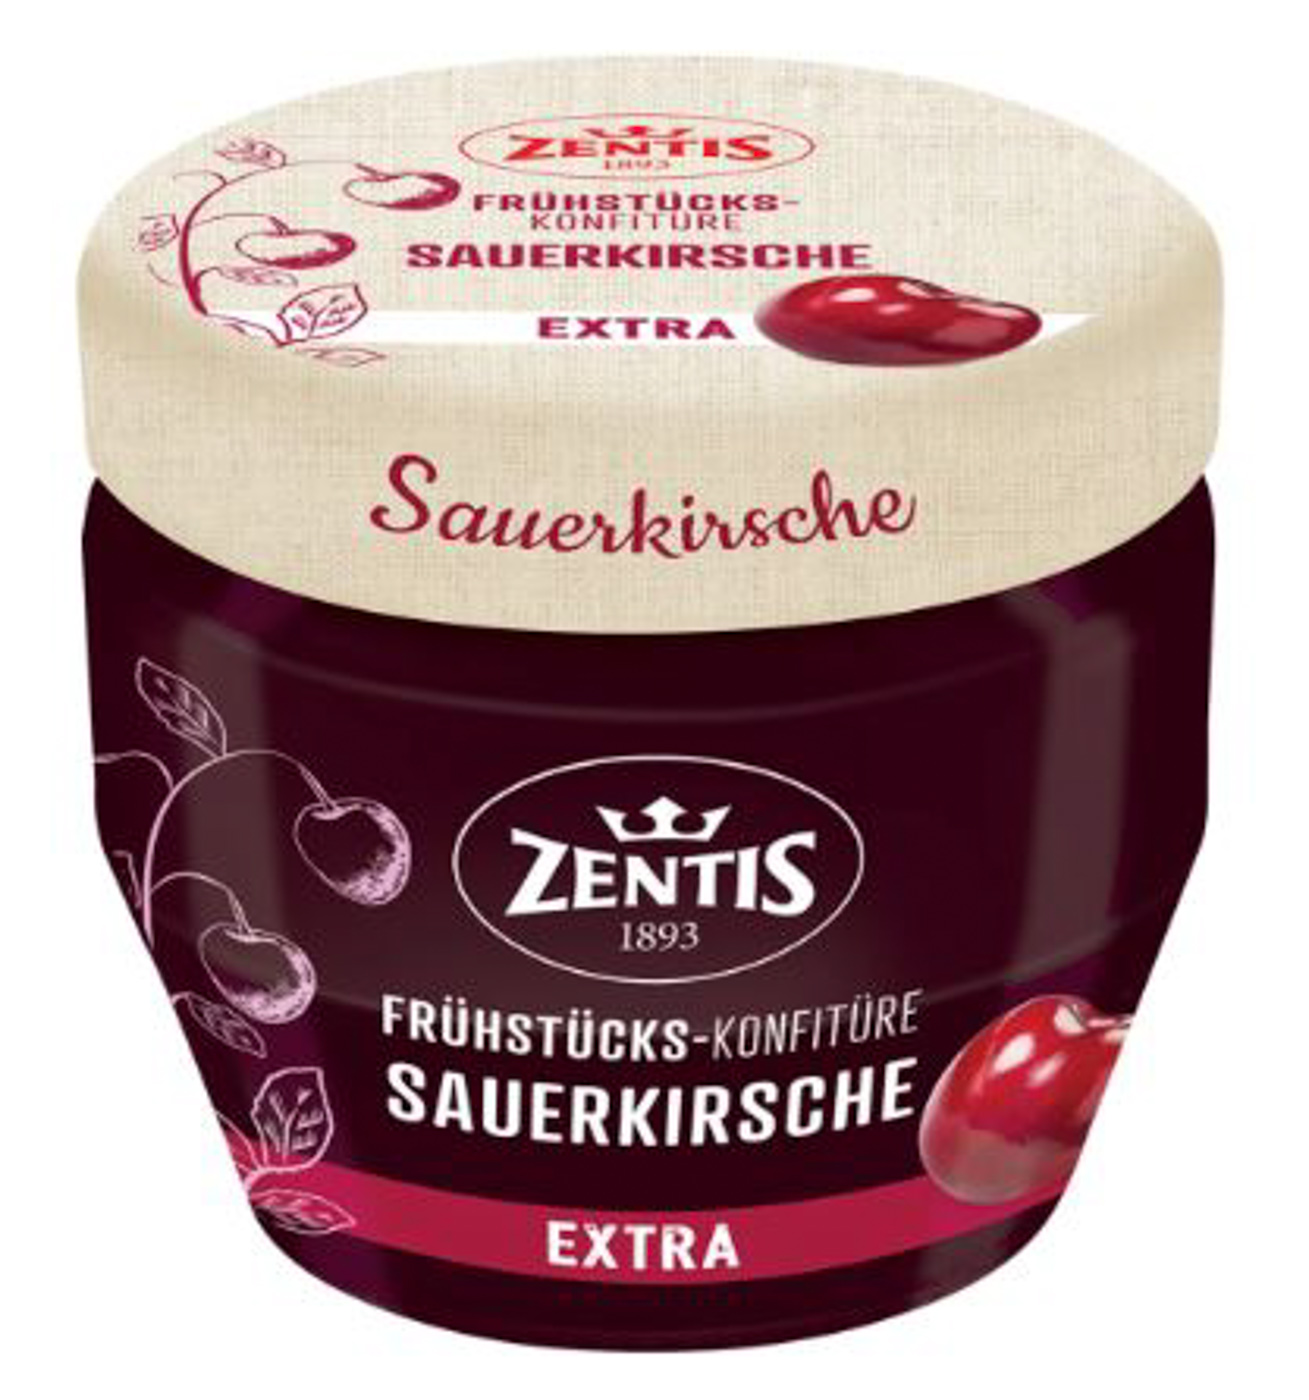 Zentis Frühstücks Konfitüre extra Sauerkirsche 230G